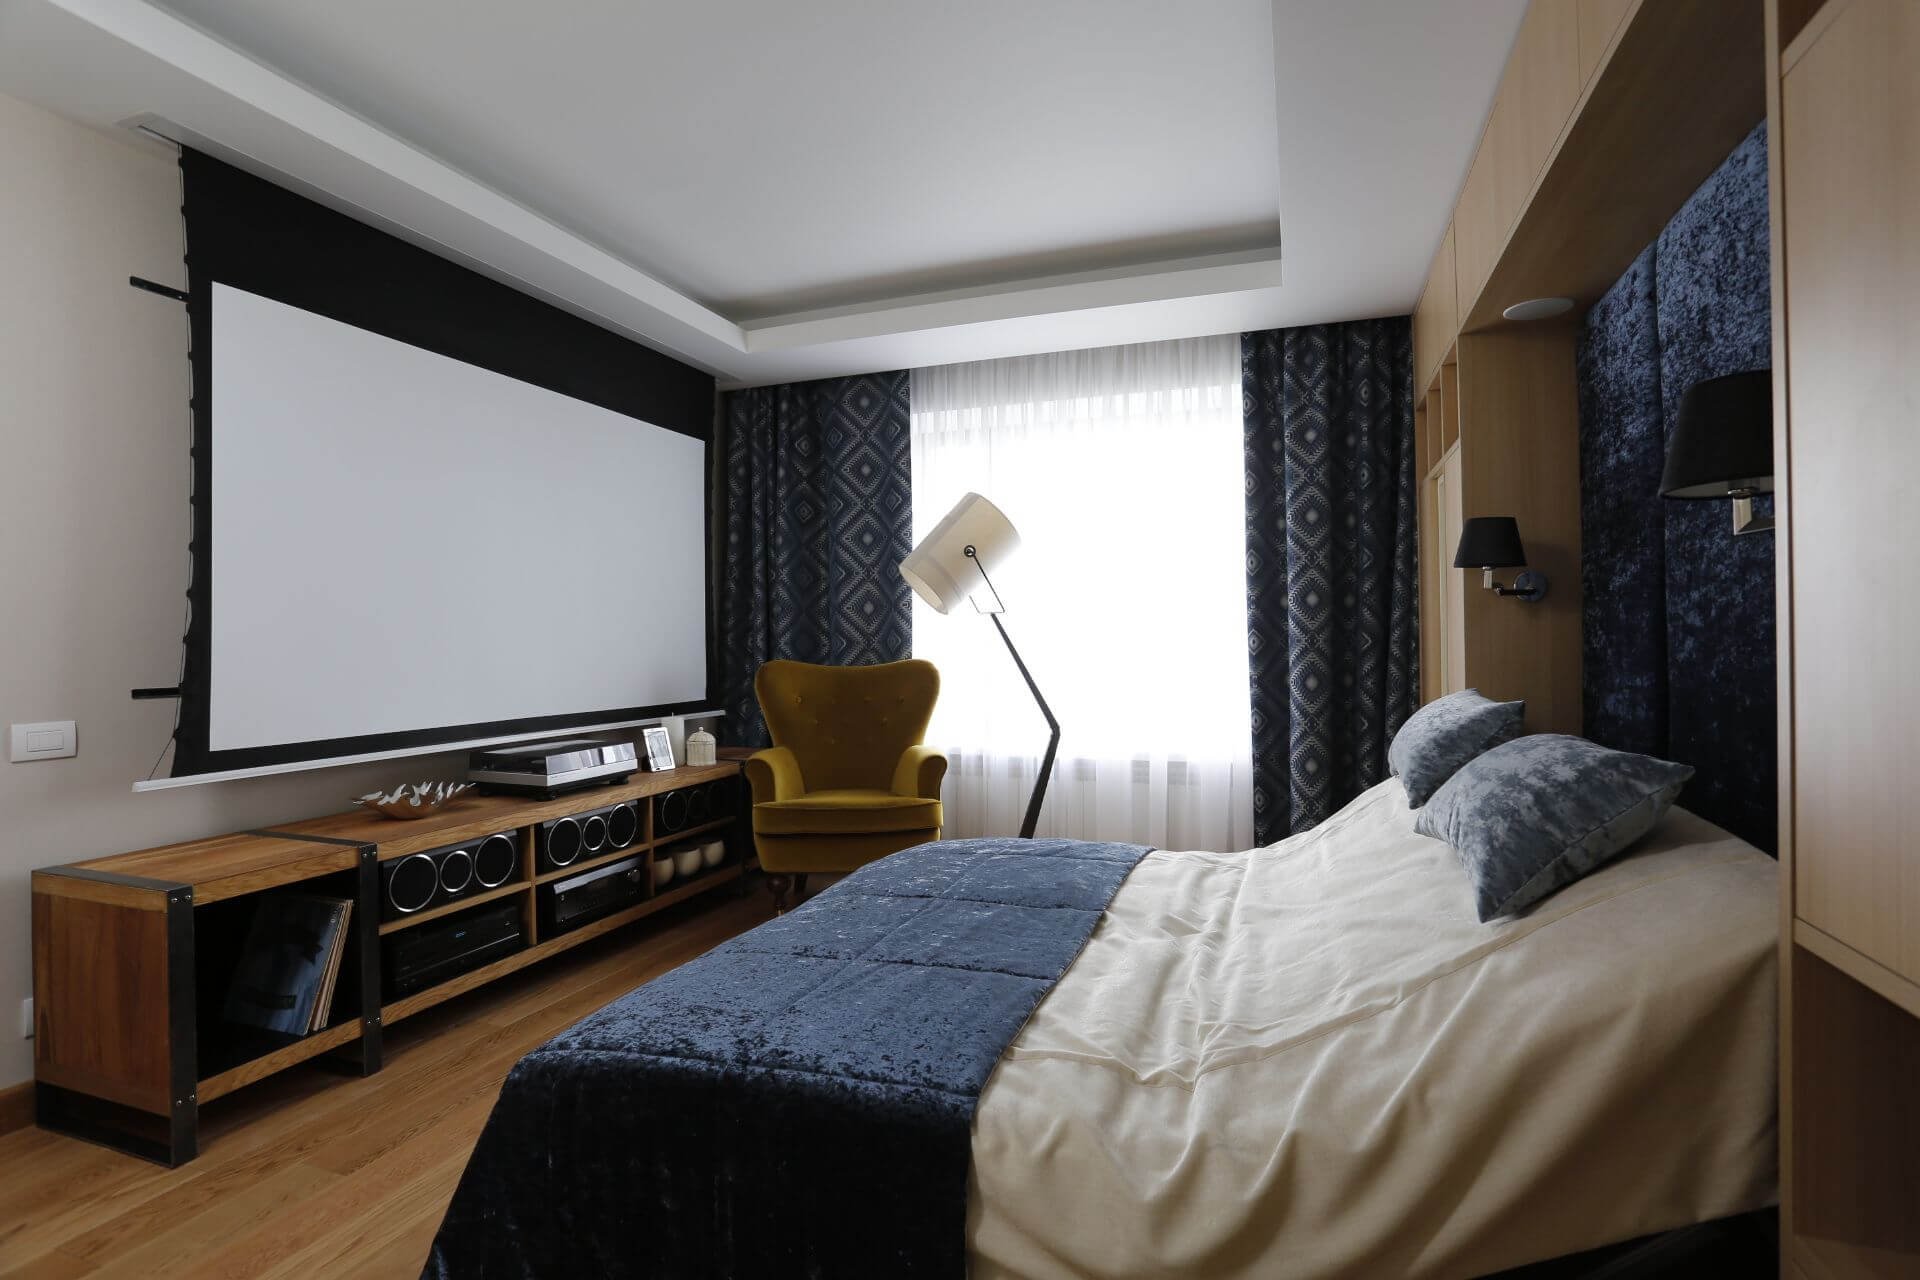 Телевизор 189 см. Спальня с большим телевизором. Домашний кинотеатр в спальне. Телевизор в спальне на стене. Спальные комнаты с телевизором.